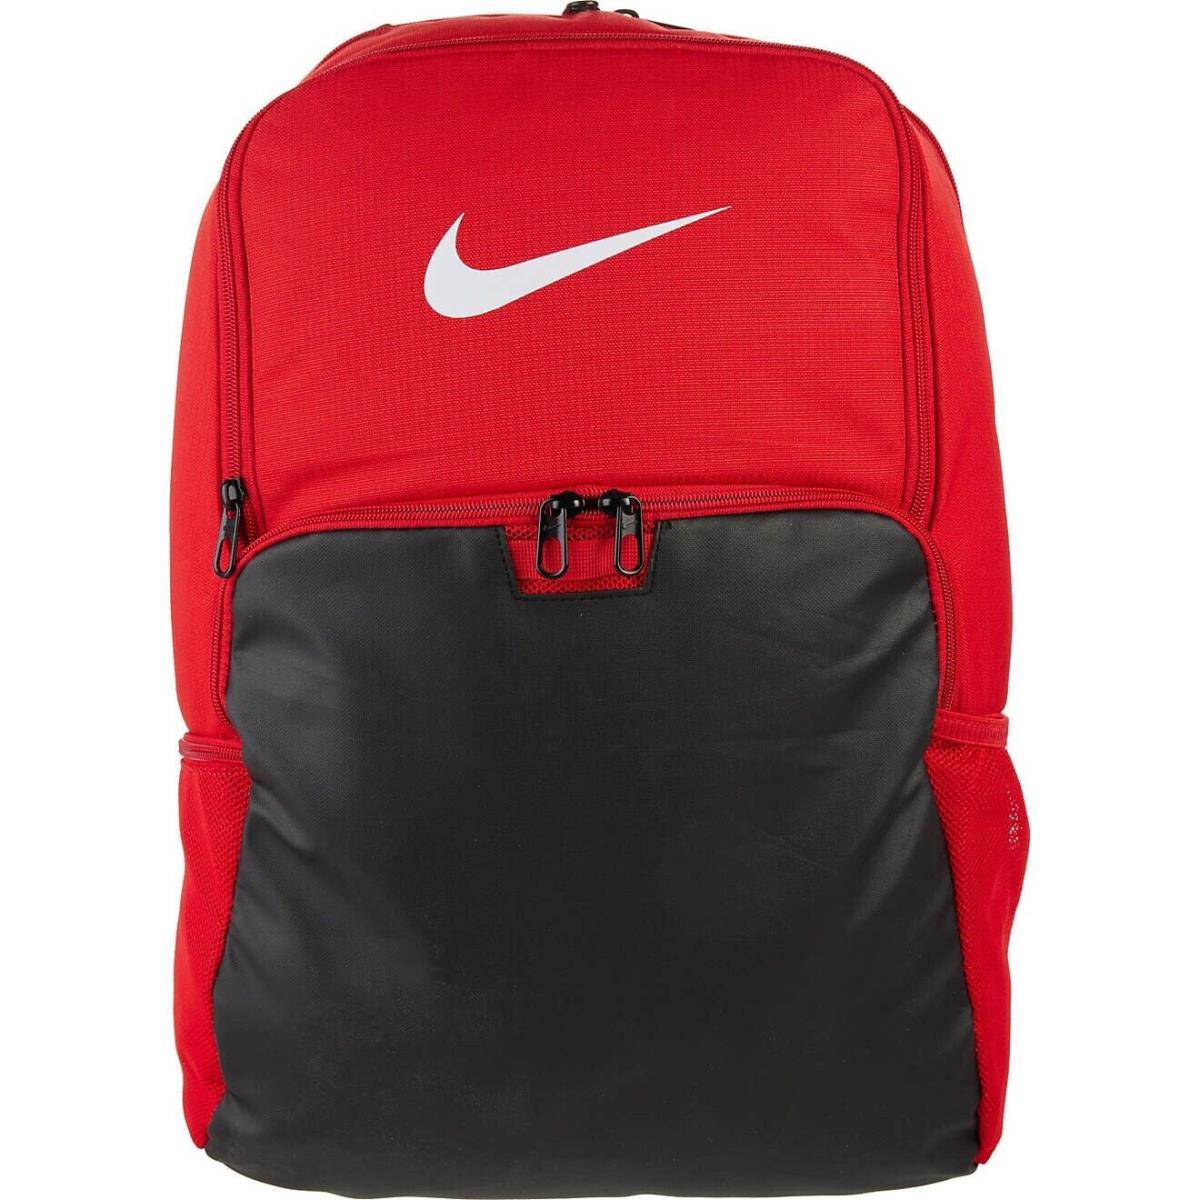 Nike Brasilia 9.0 Training Backpack with Laptop Sleeve Red/black